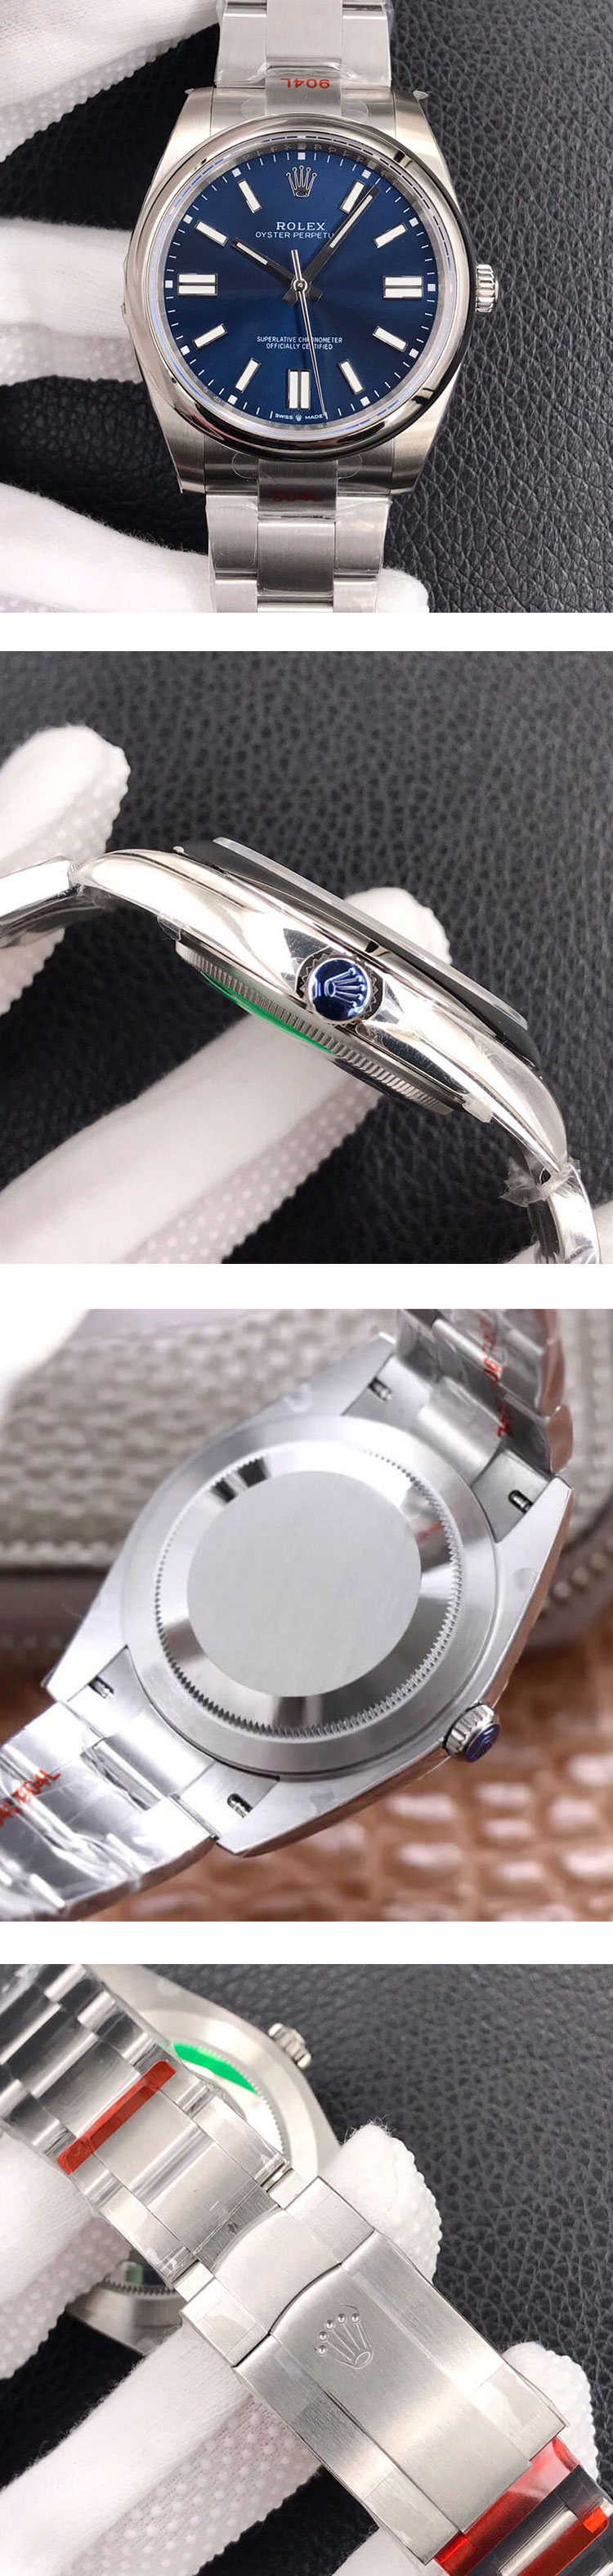 安心購入 ロレックス M124300-0003オイスターパーペチュアル 41mm スーパーコピー時計